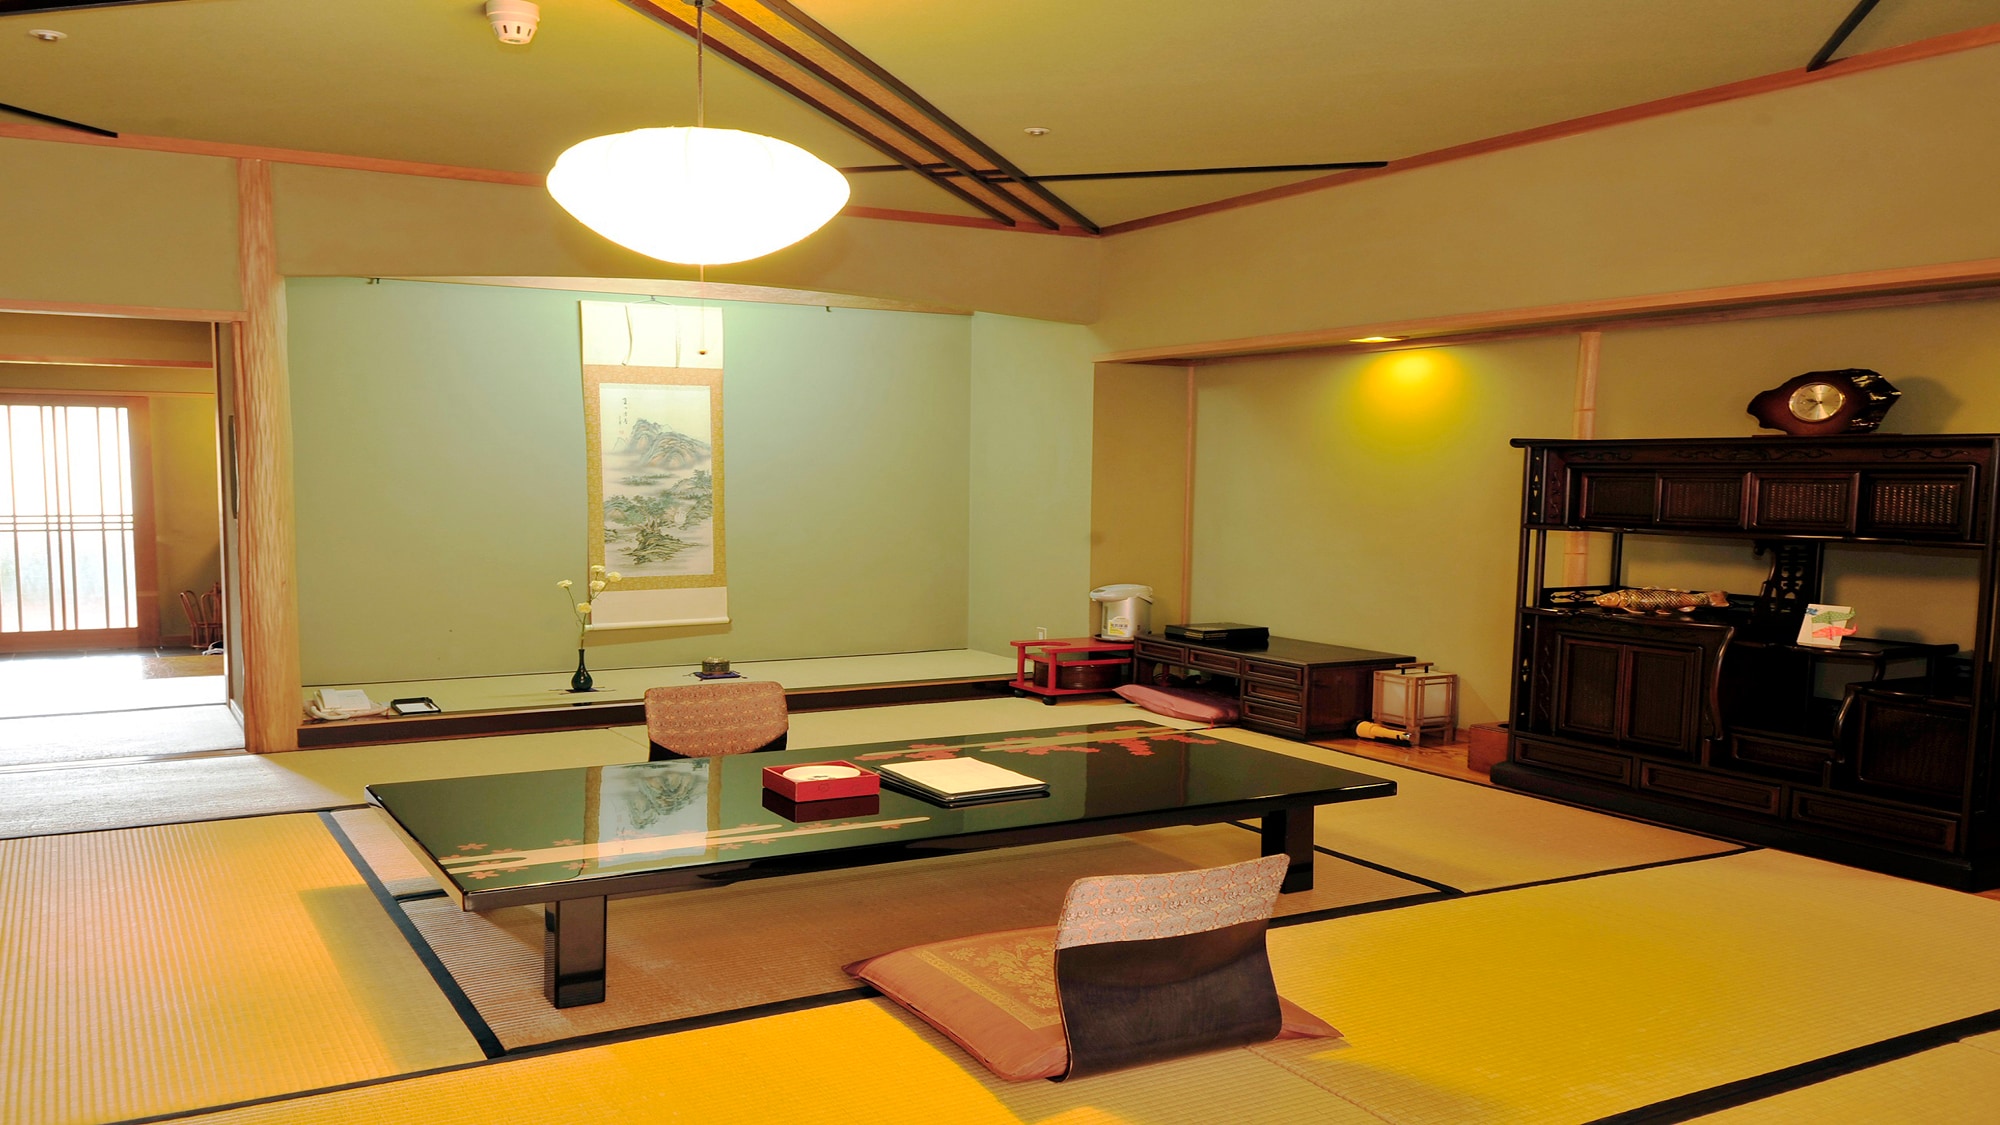 Kamar bergaya Jepang 12,5 tikar tatami + pelek lebar